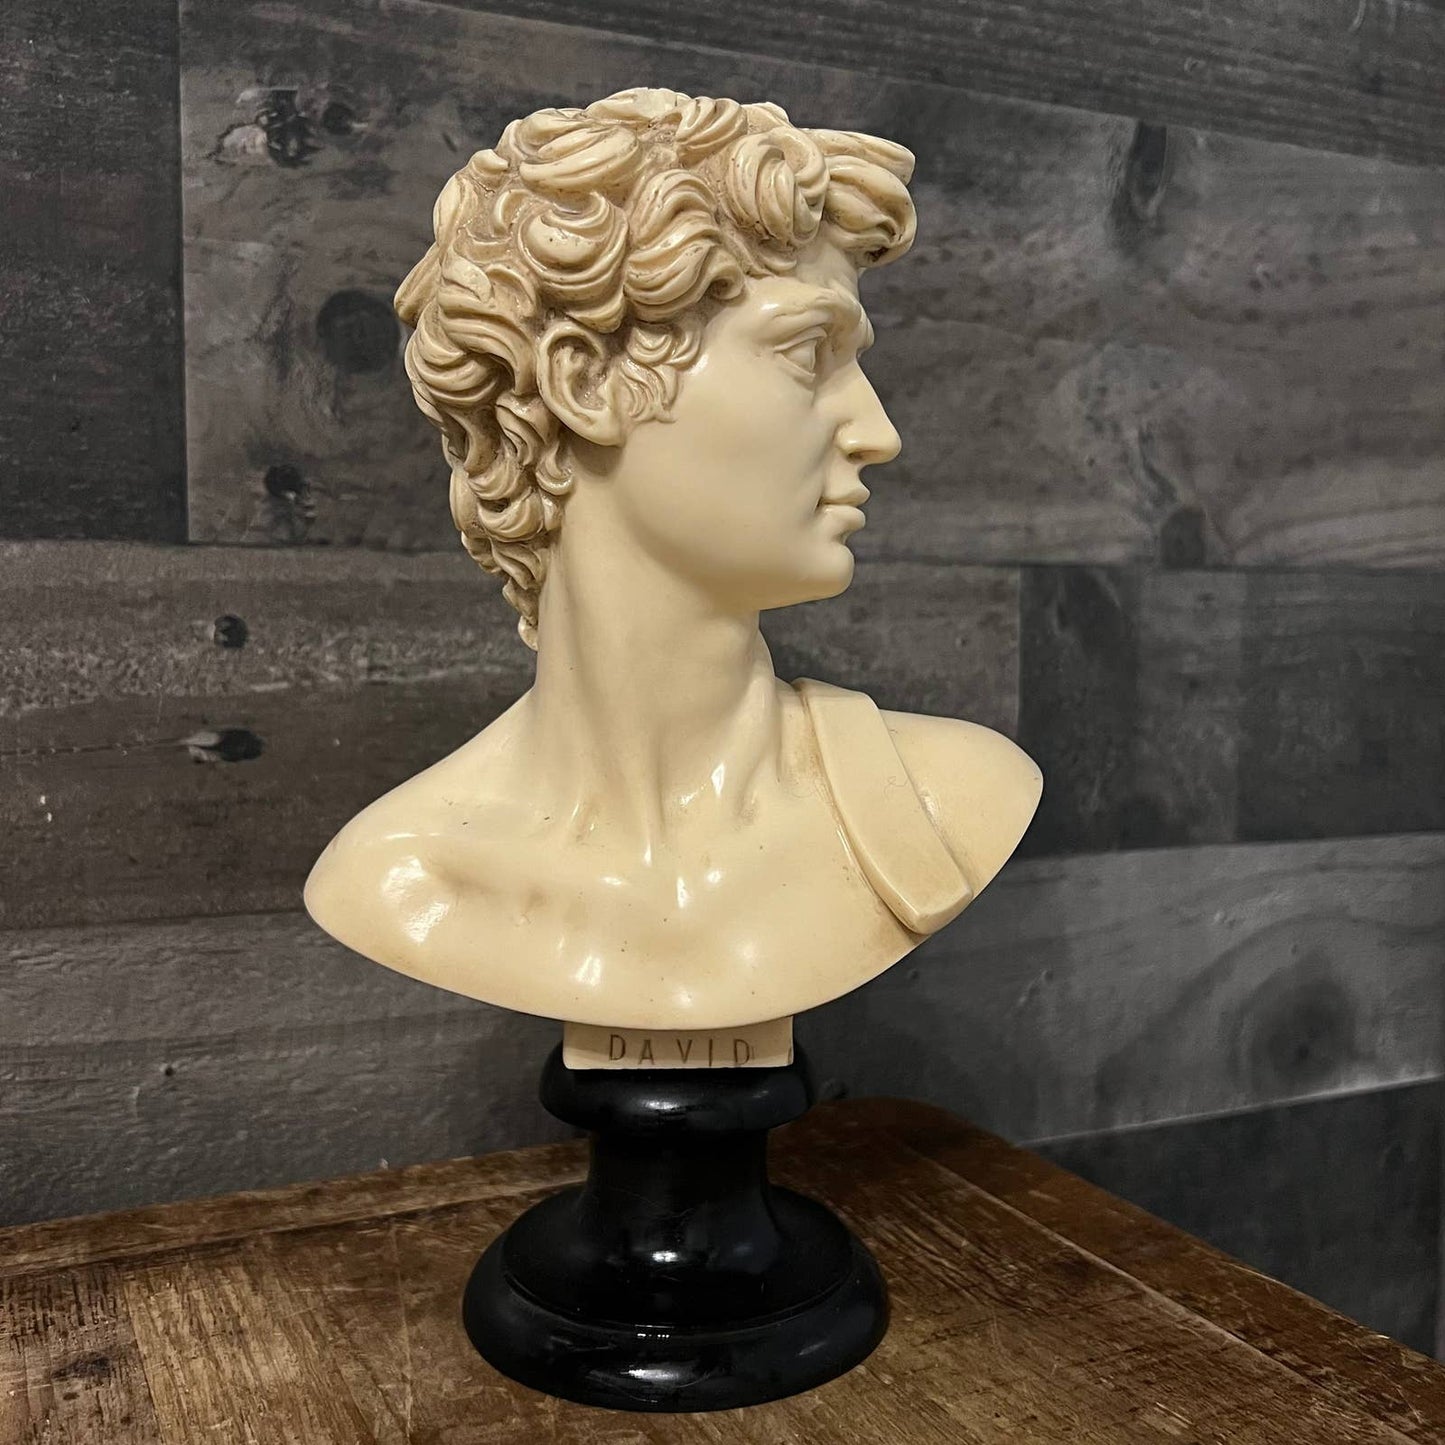 Vintage David Michelangelo bust statue sculpture by G. Ruggeri